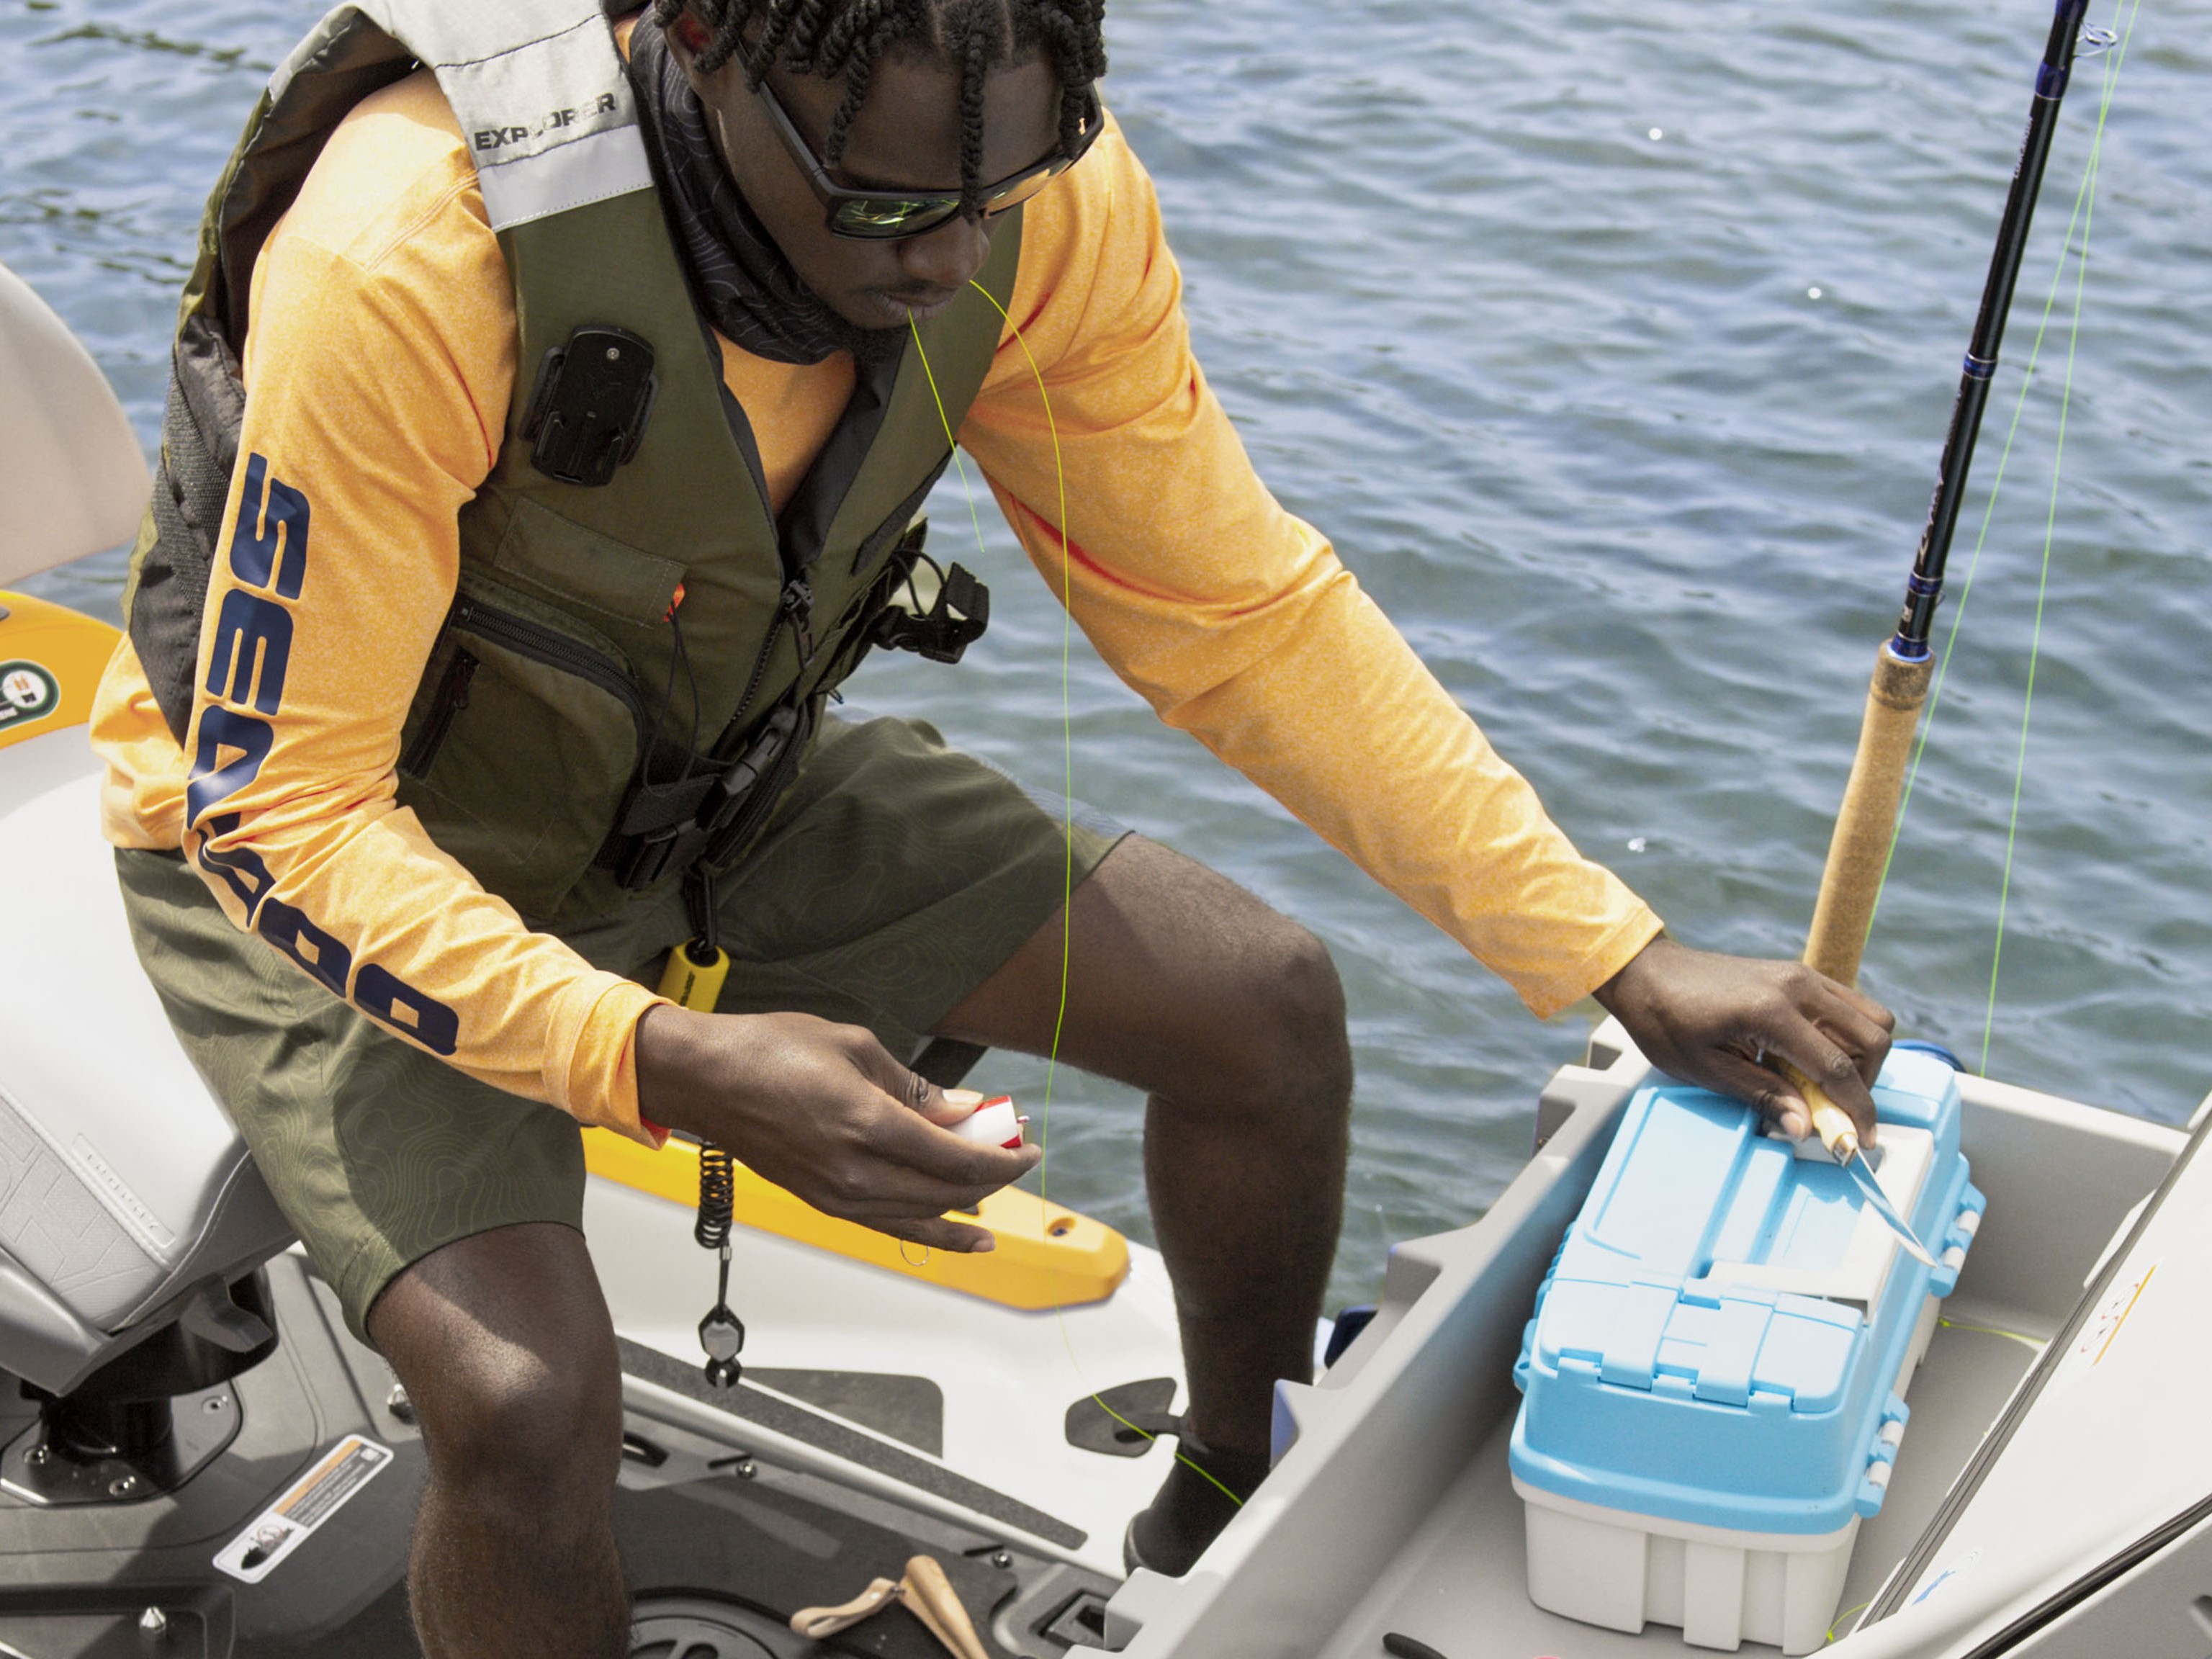 Sea-Doo riders wearing fishing gear